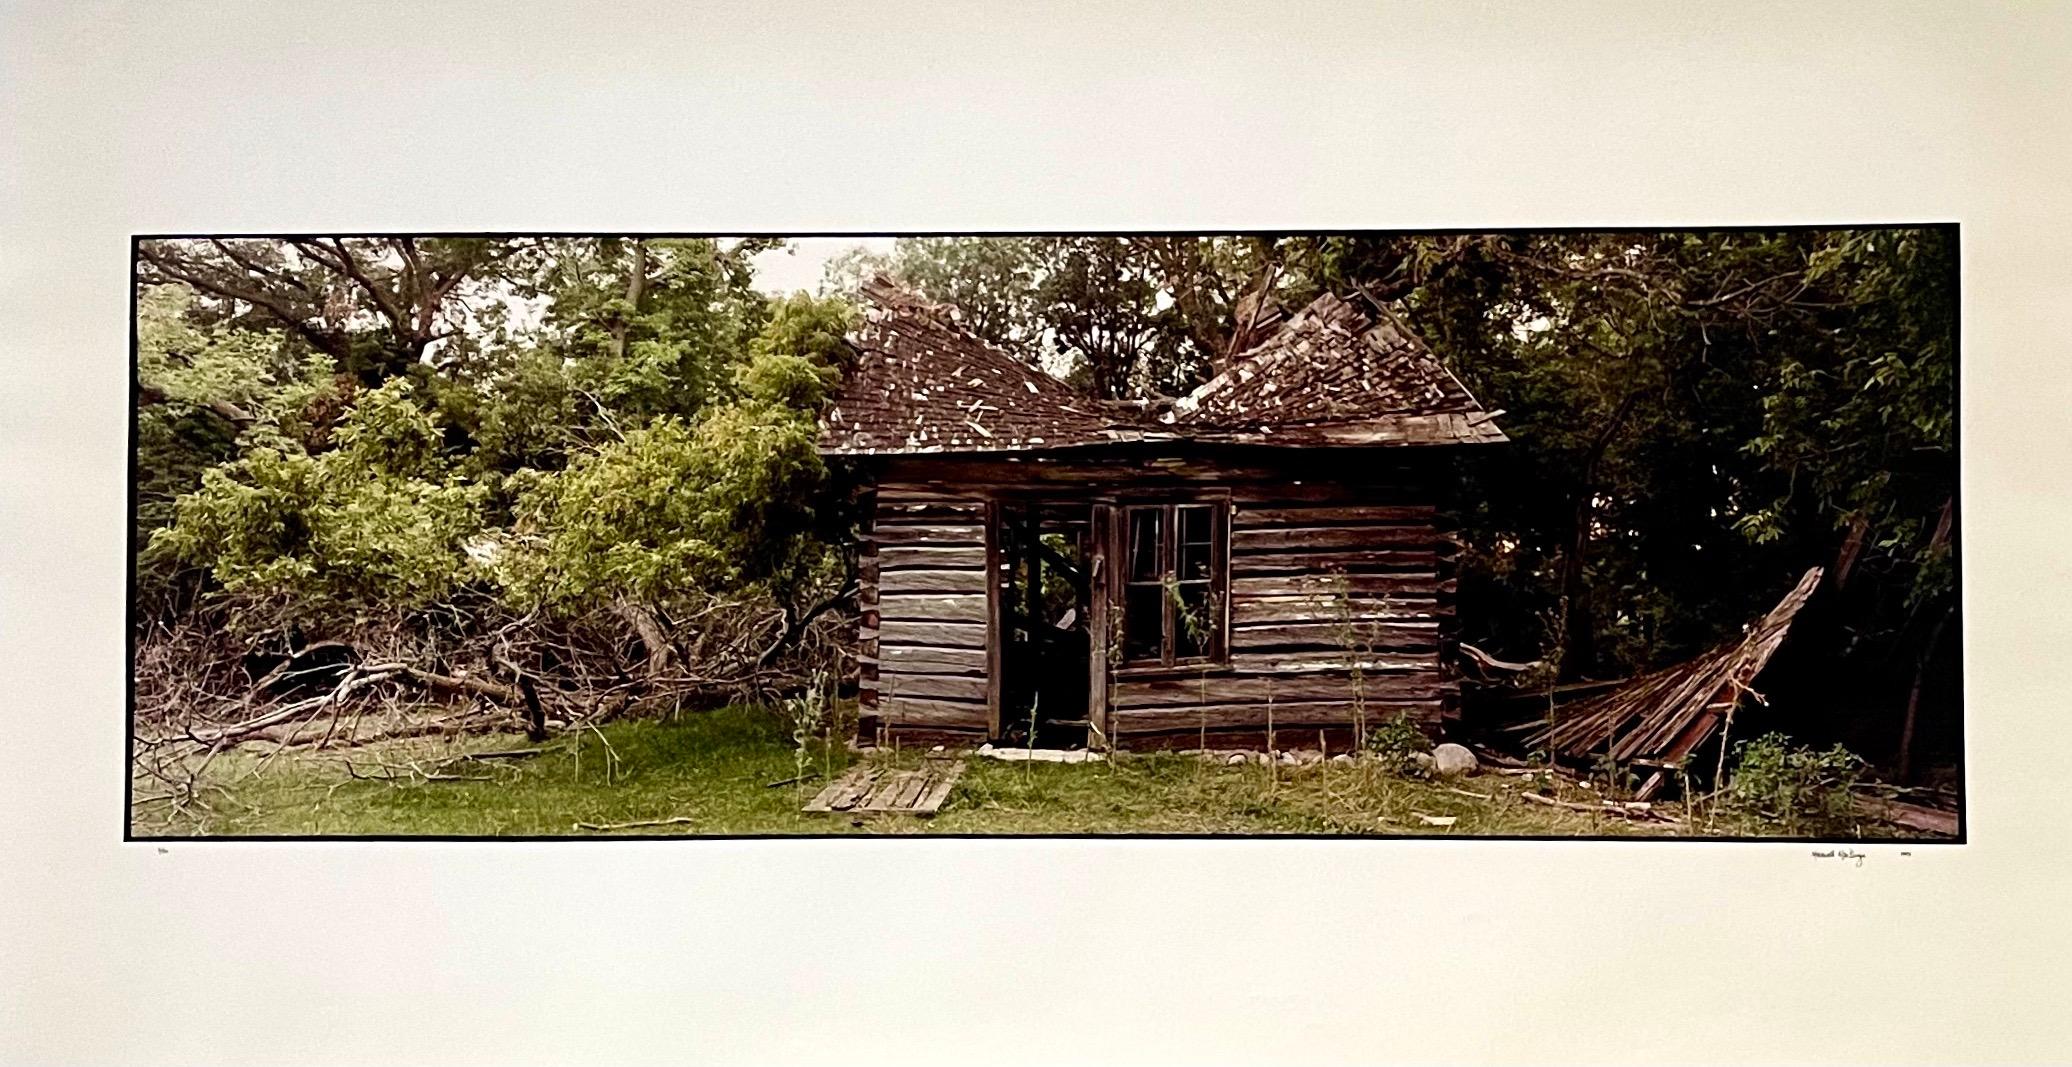 Landscape Photograph Maxwell Mackenzie - Paysage d'été de ferme, grande photographie couleur vintage en panneau, signée Photo